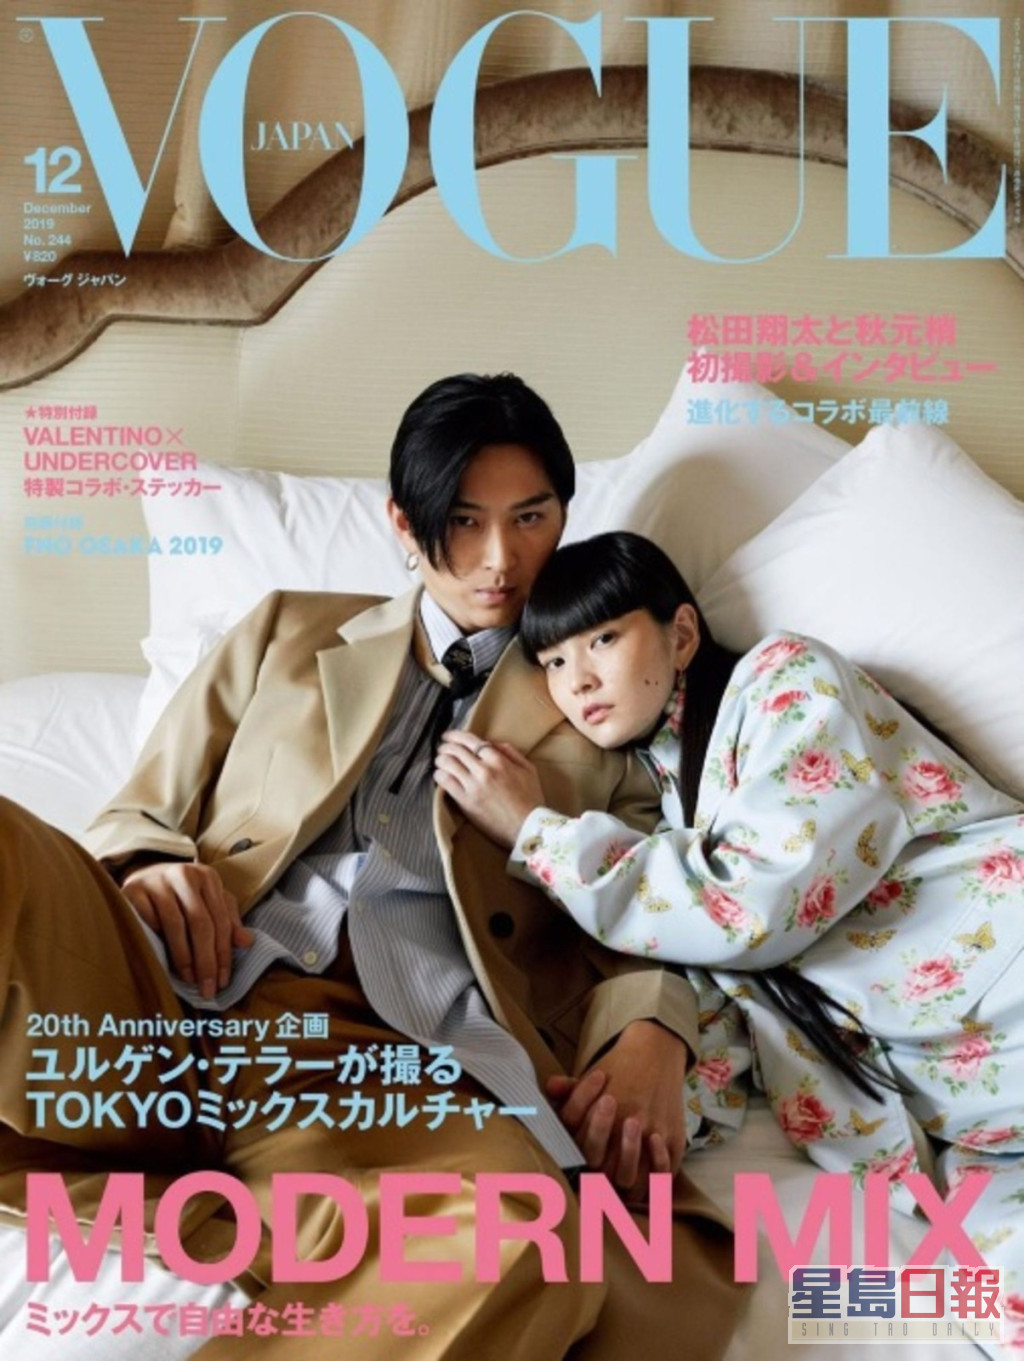 松田翔太和秋元梢曾一同登上时尚杂志封面。